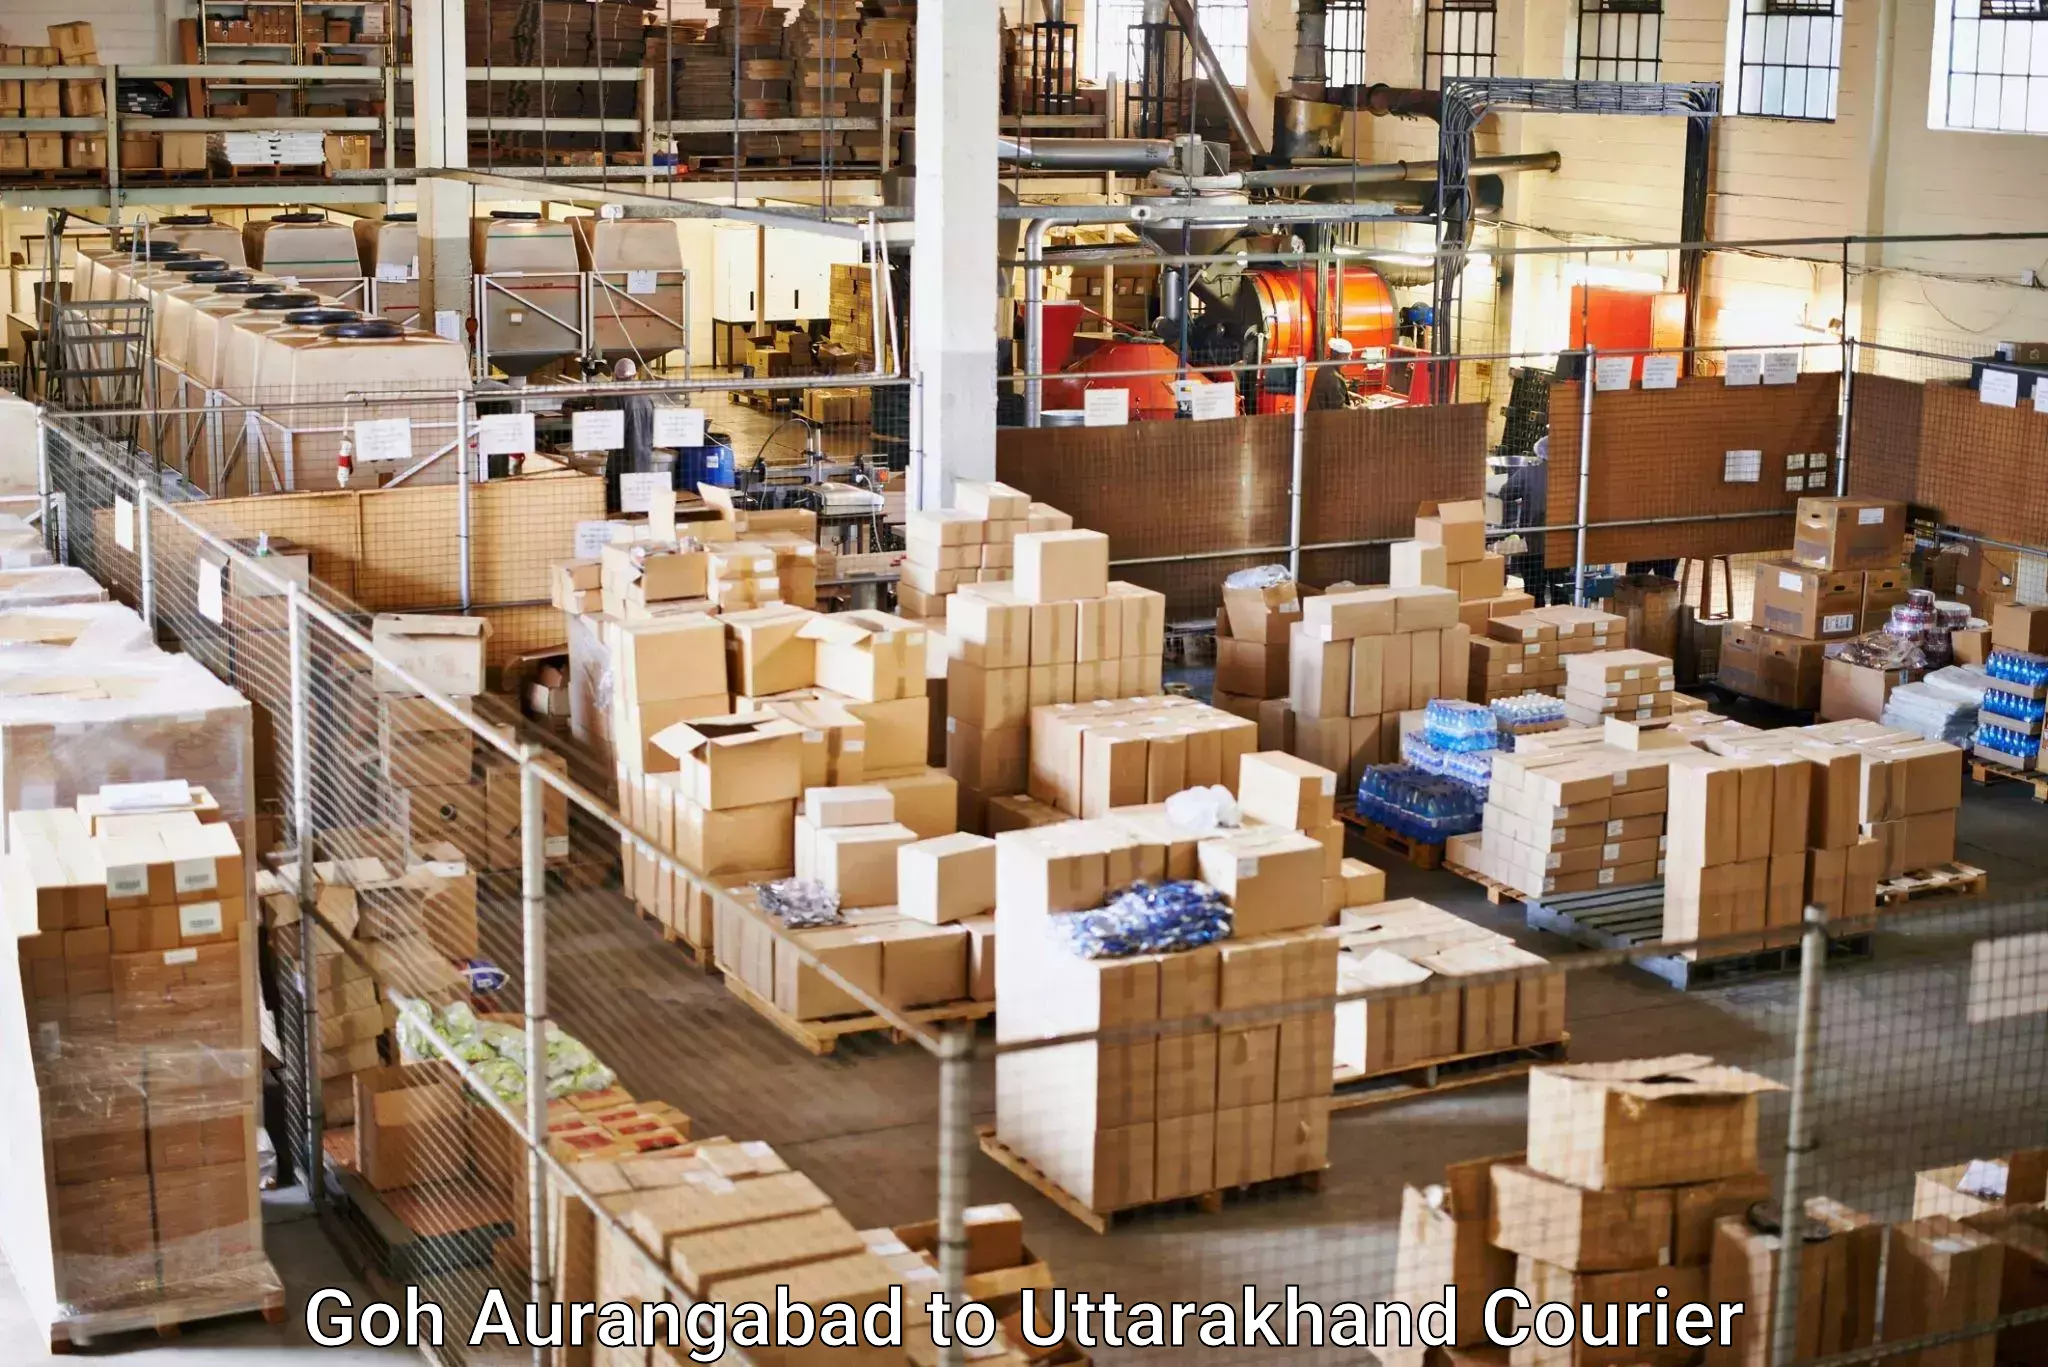 Residential courier service Goh Aurangabad to Uttarakhand